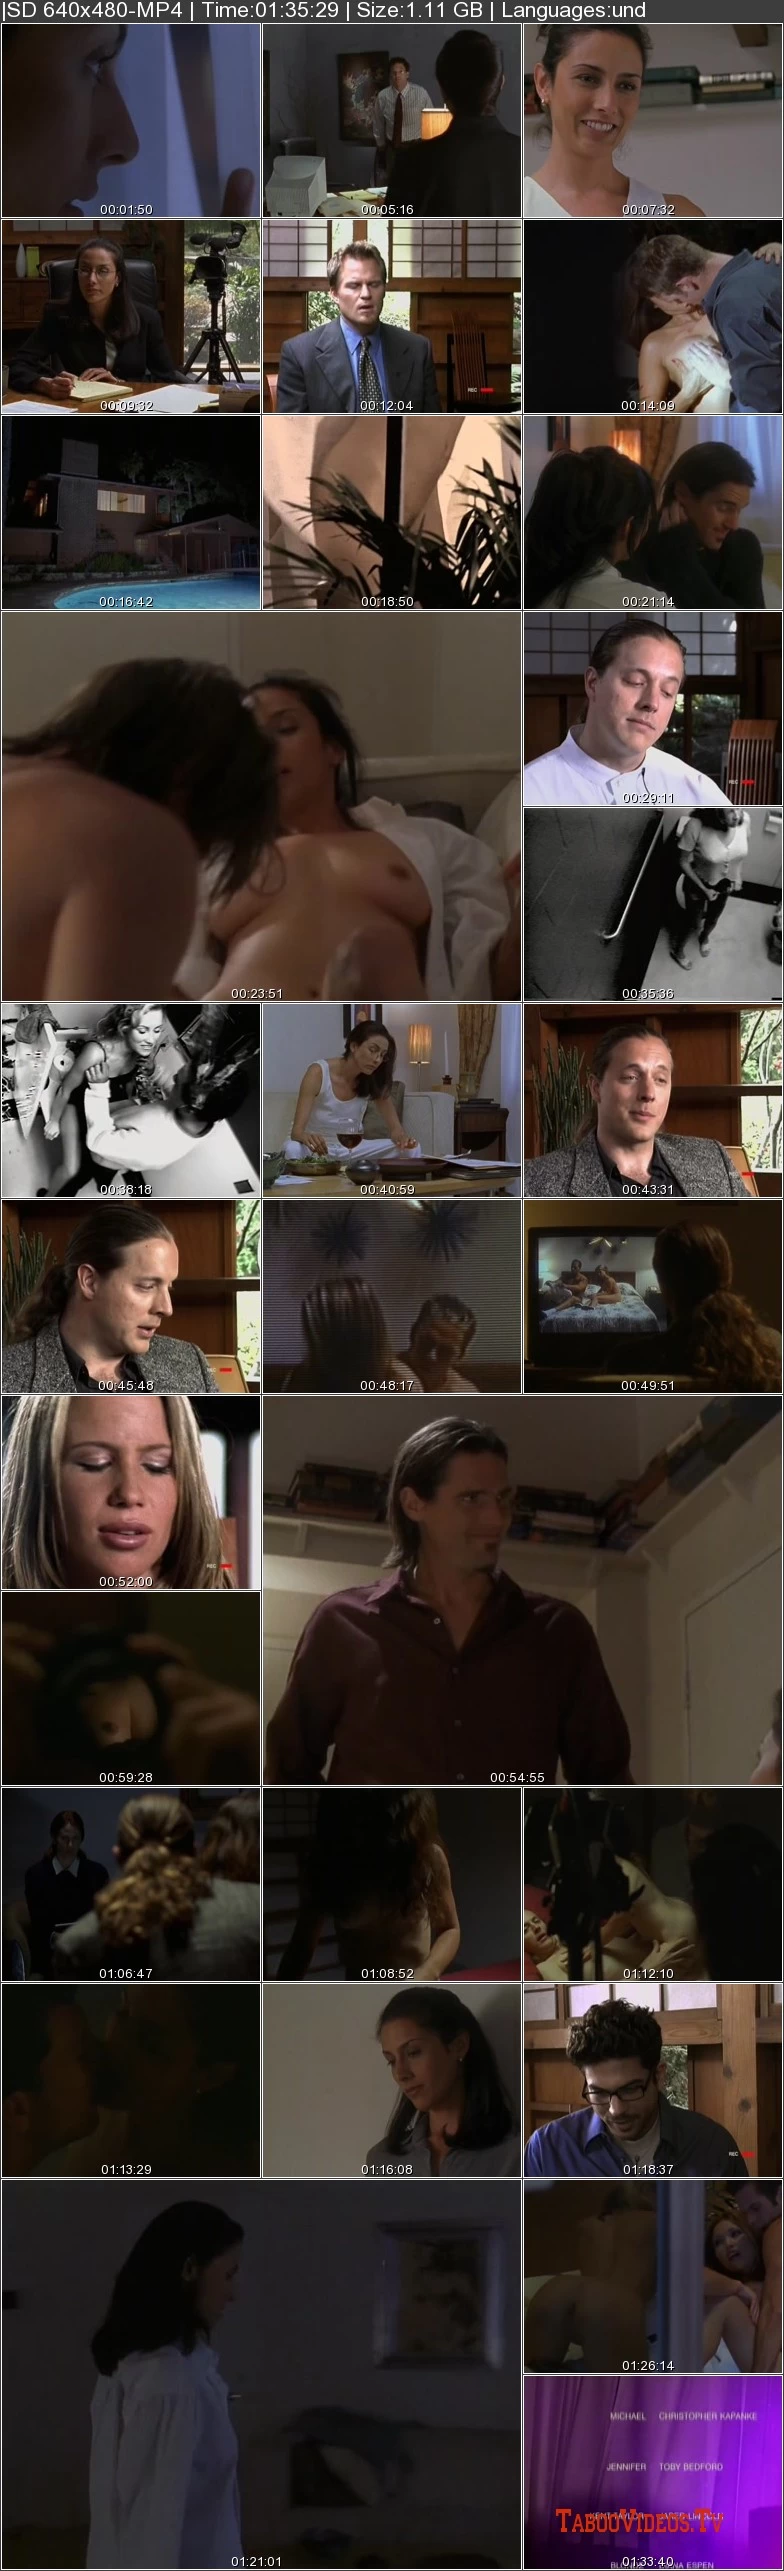 Voyeur Confessions (2001) / Erotic sexploitation softcore movie image